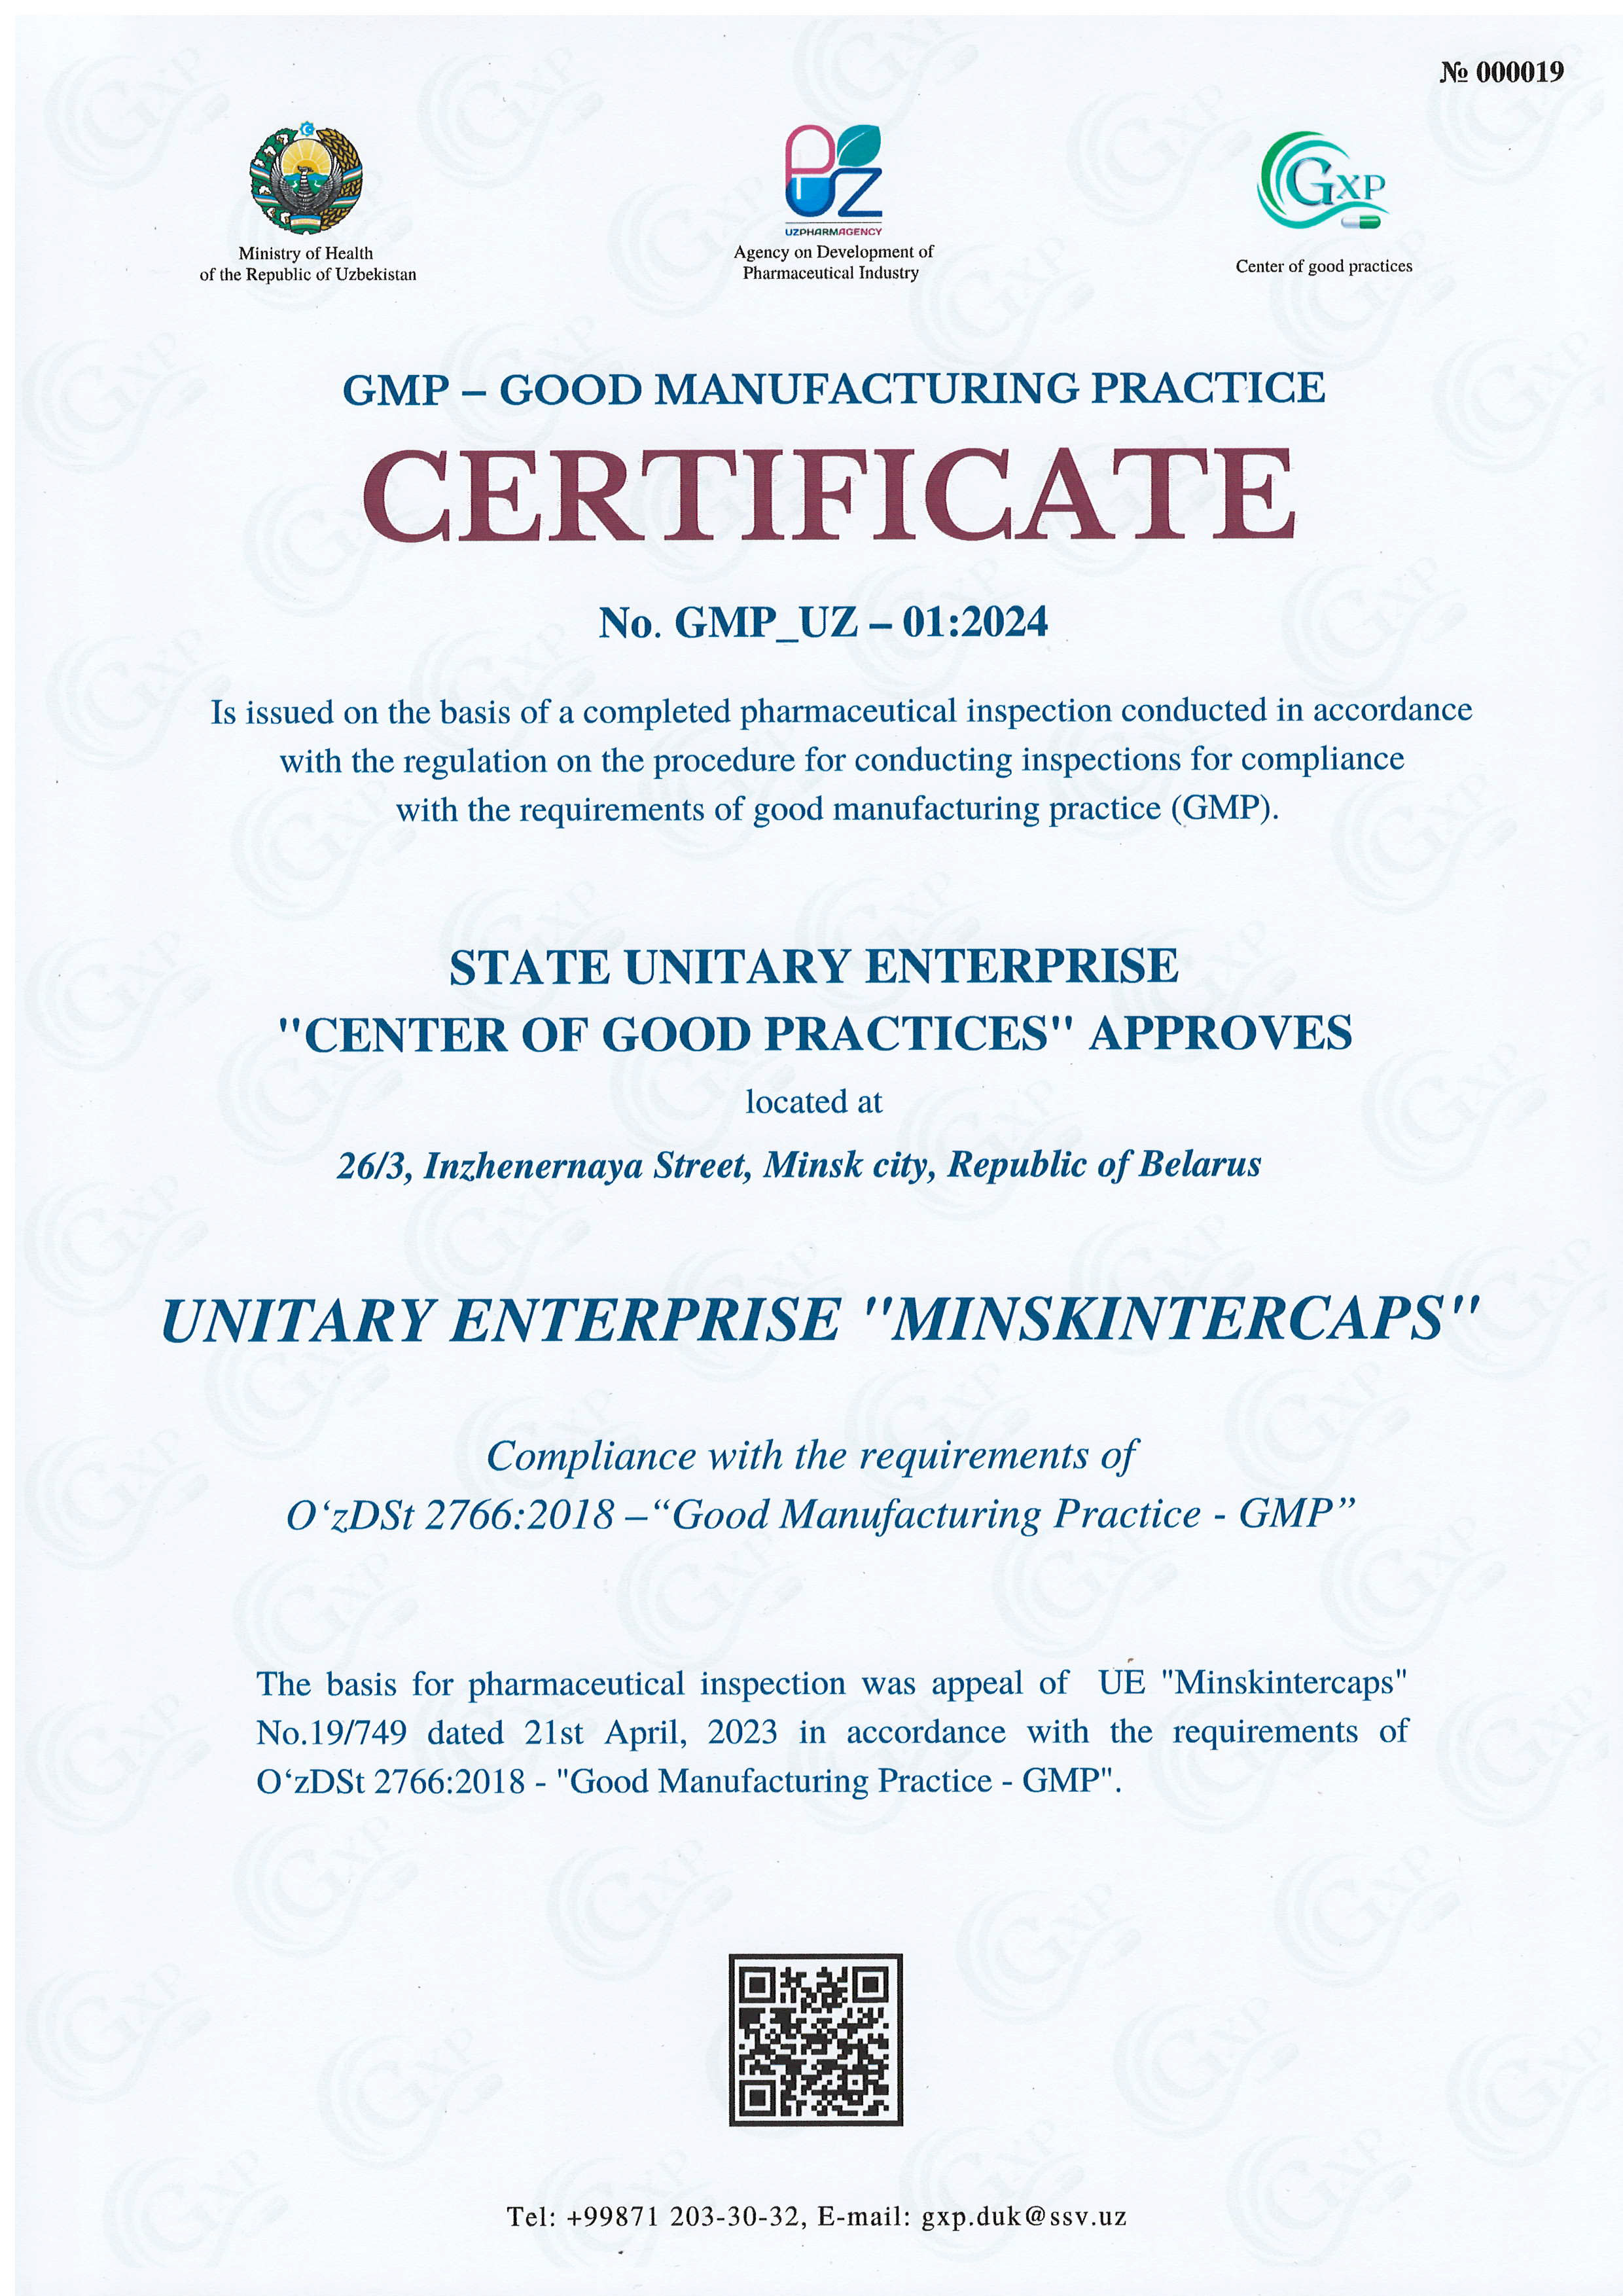 УП «Минскинтеркапс» первым прошло сертификацию на соответствие требованиям GMP Республики Узбекистан